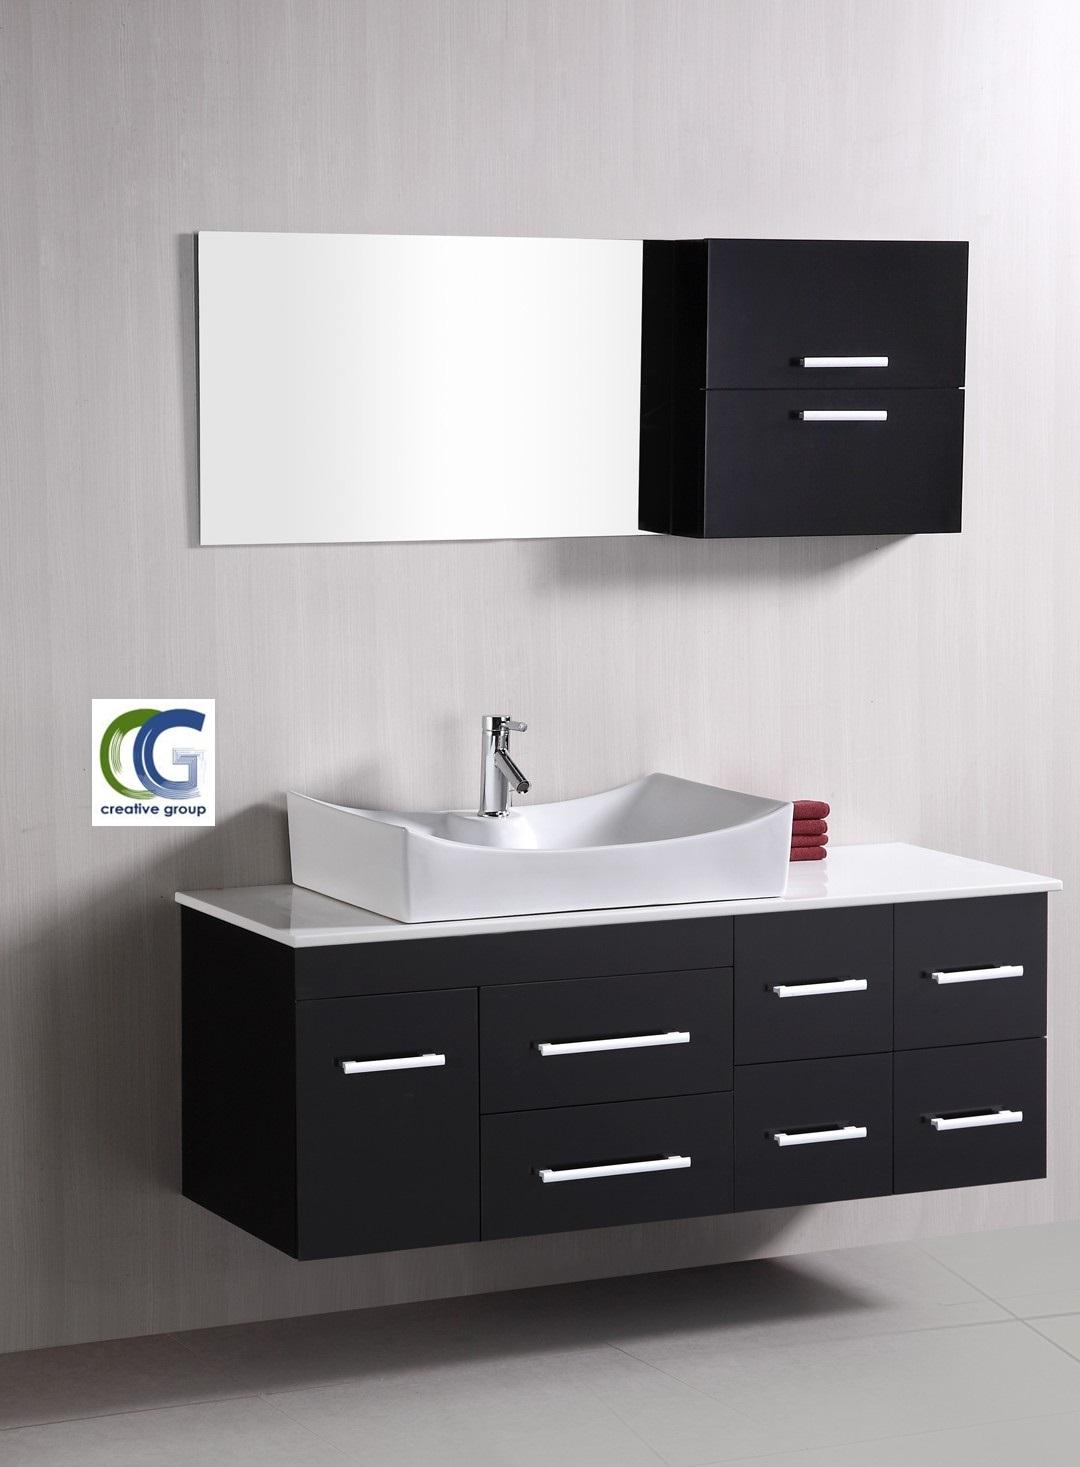 وحدات حمام 85 سم- افضل تصاميم وحدات الحمام مع شركة كرياتف  جروب 01203903309 566723329